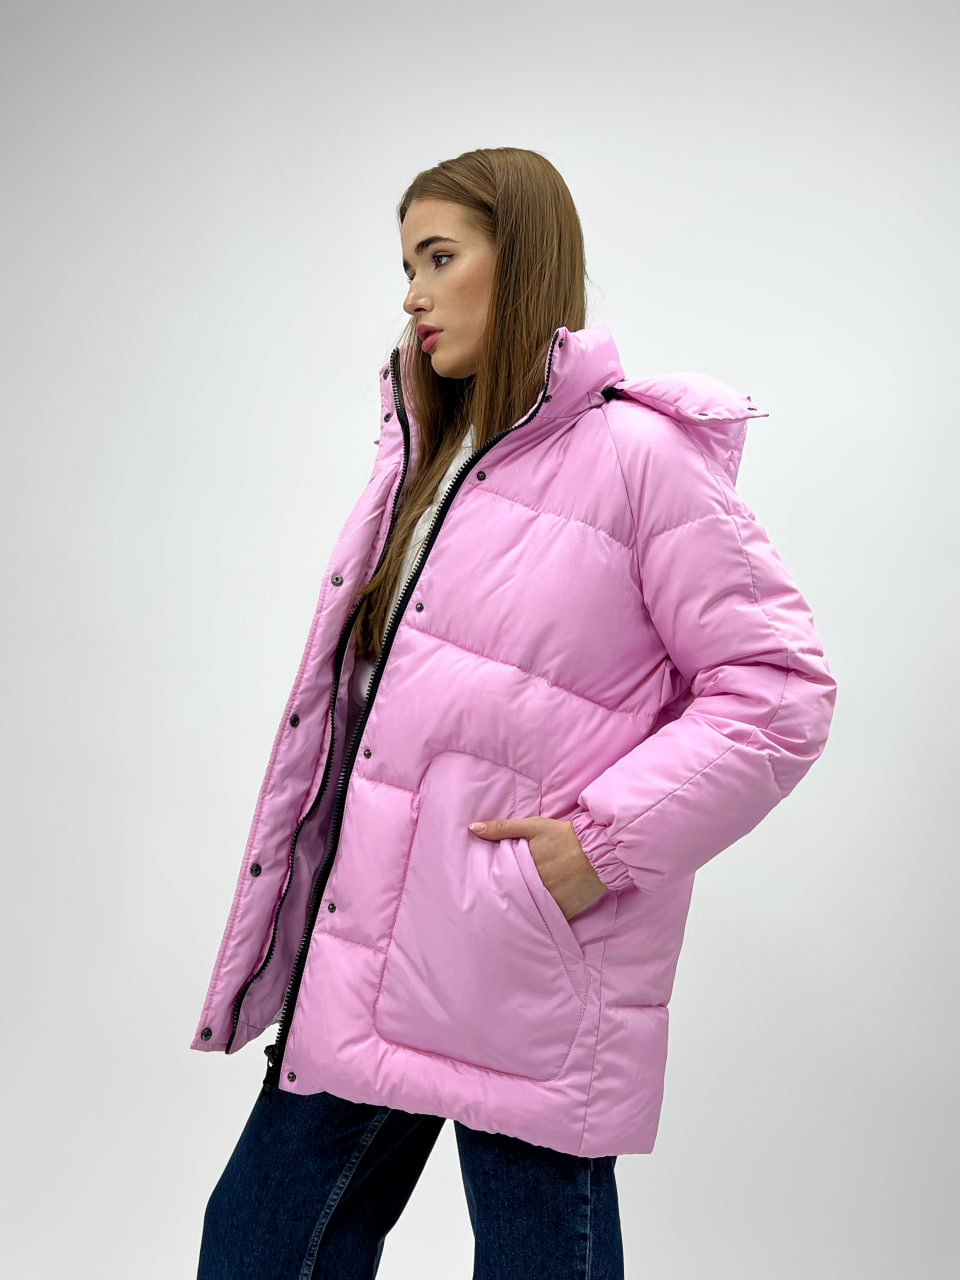 Женская зимняя куртка-пуховик Reload Elly розовый/ Зимний короткий пуховик оверсайз стильный теплый - Фото 4